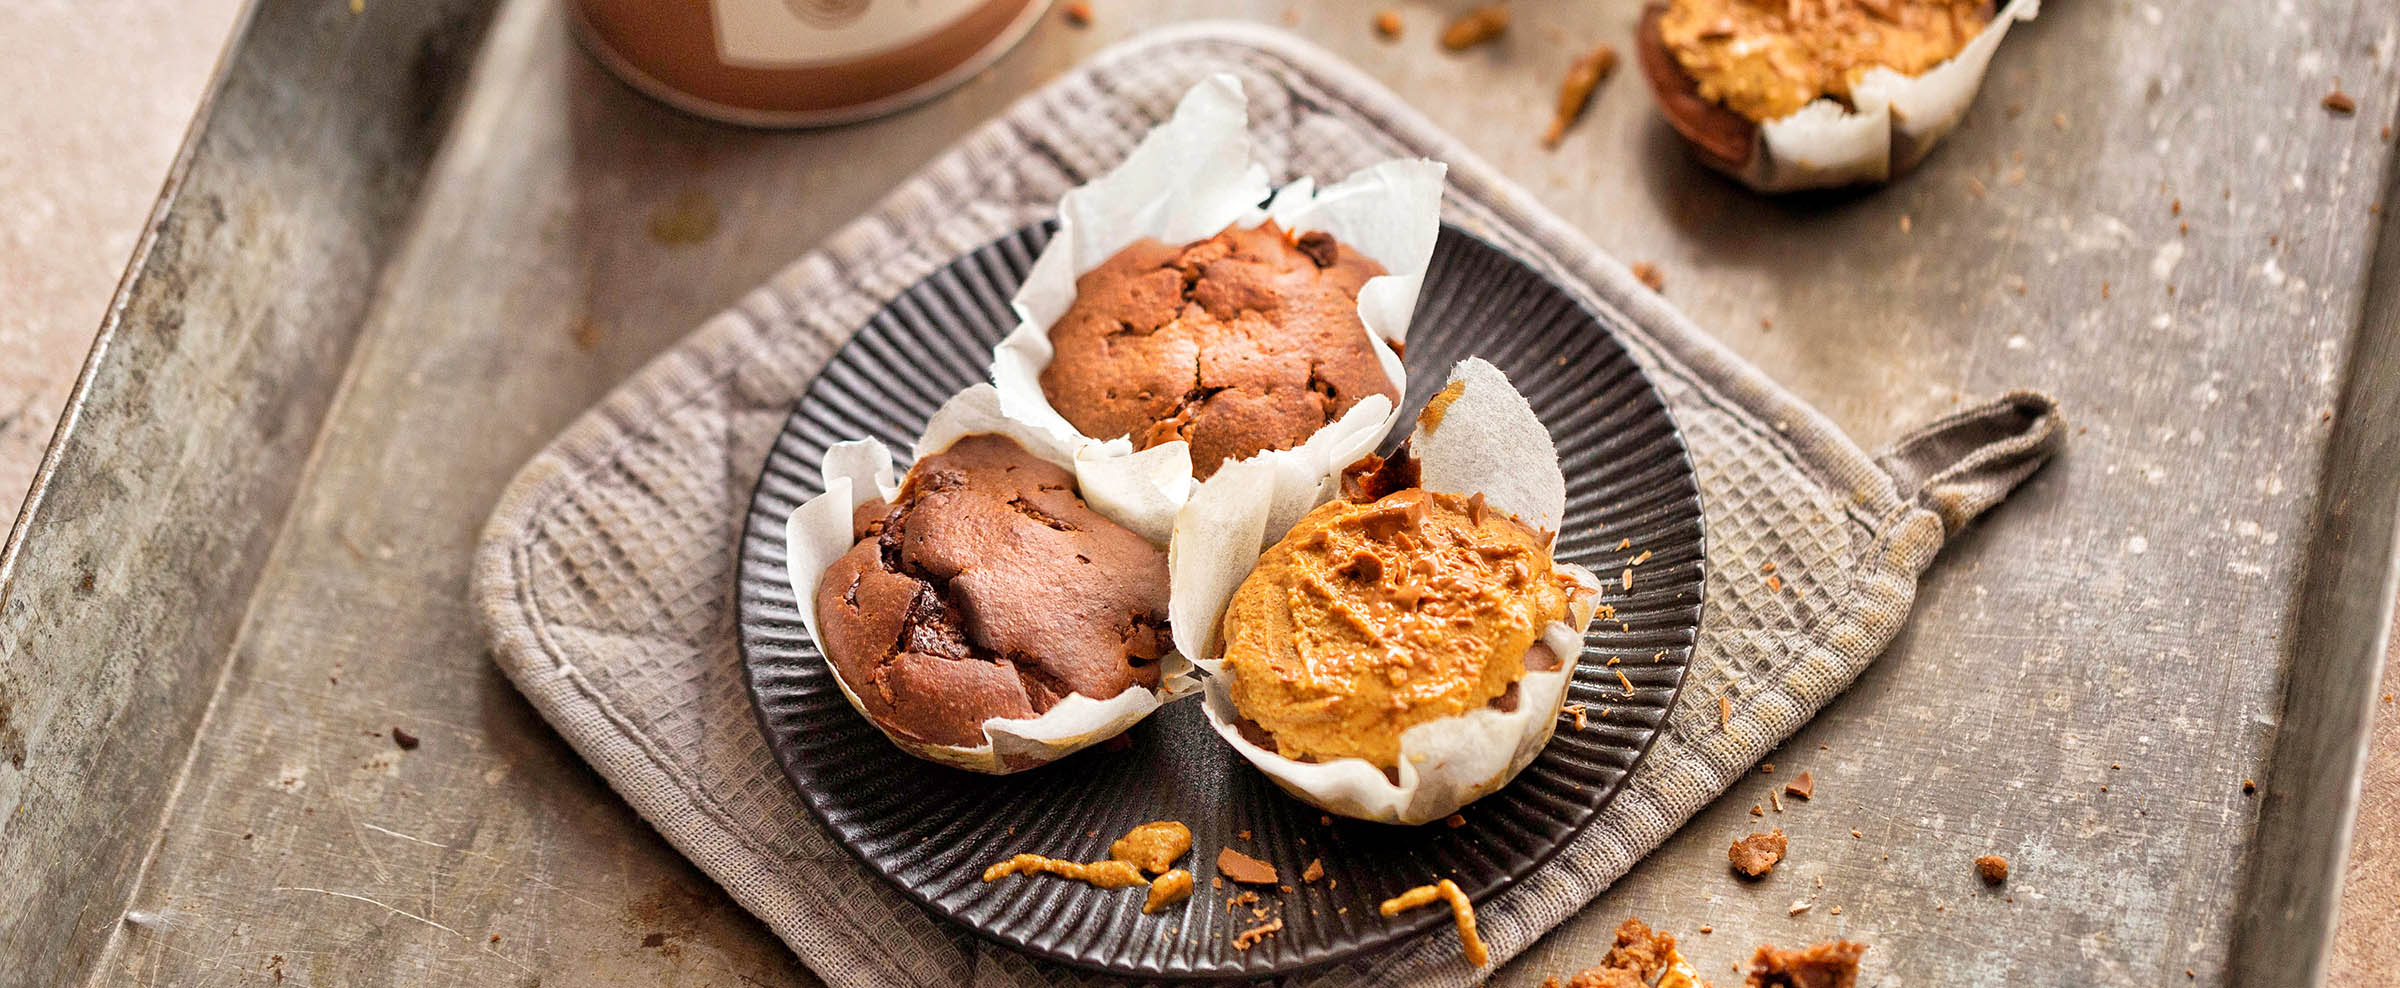 Schokoladige Protein-Muffins selber machen